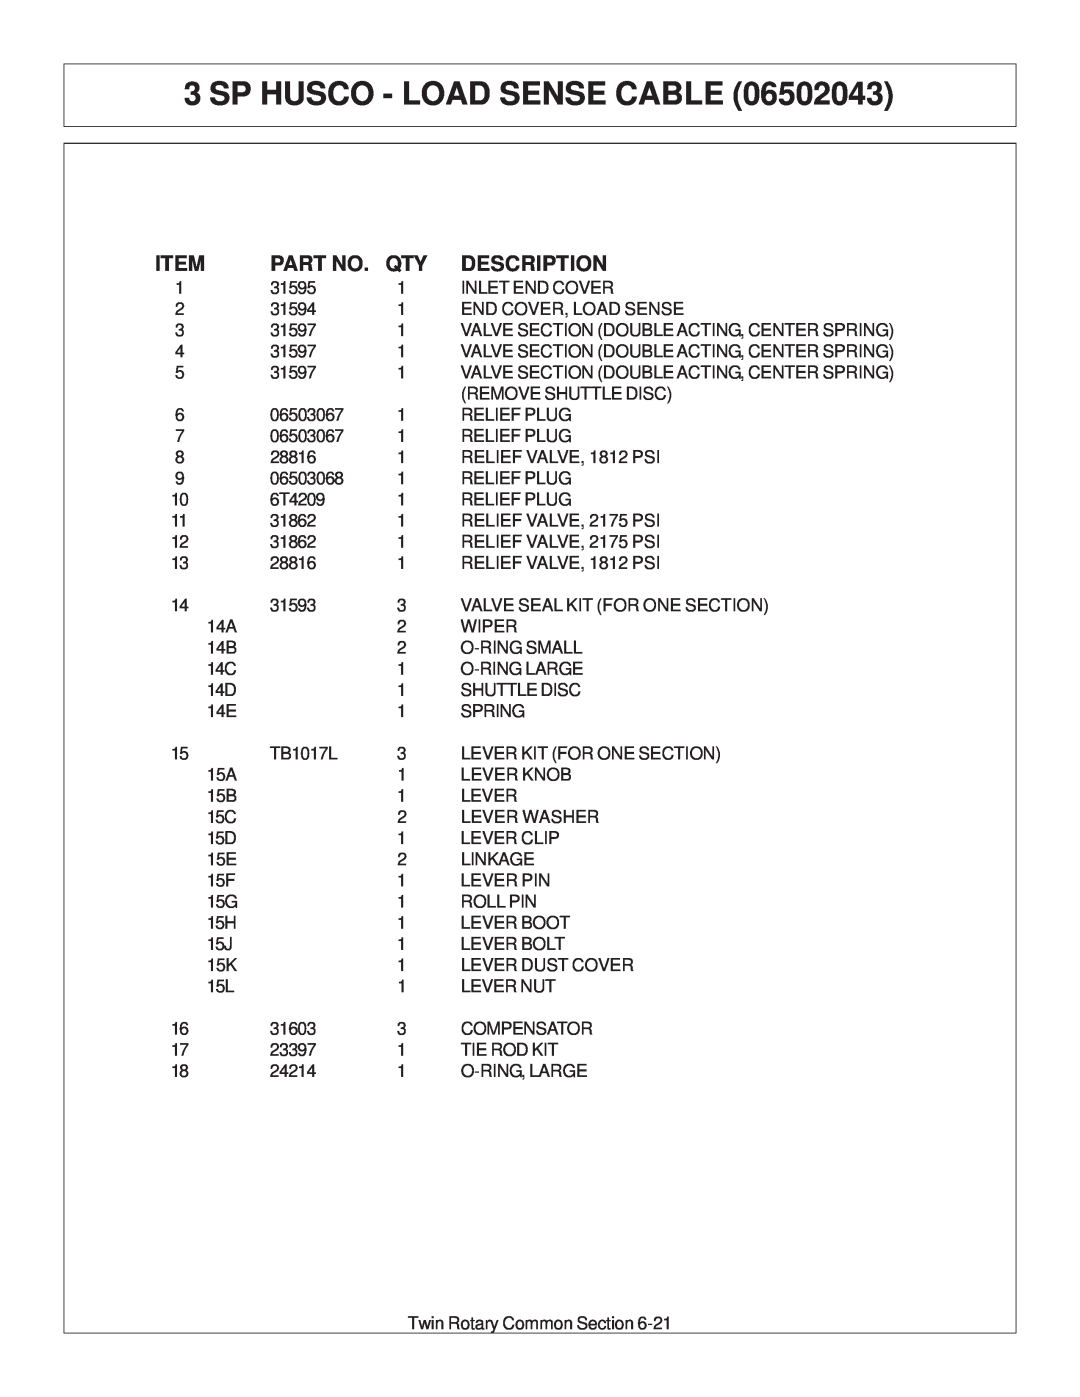 Tiger Products Co., Ltd JD 72-7520 manual Sp Husco - Load Sense Cable, Description 